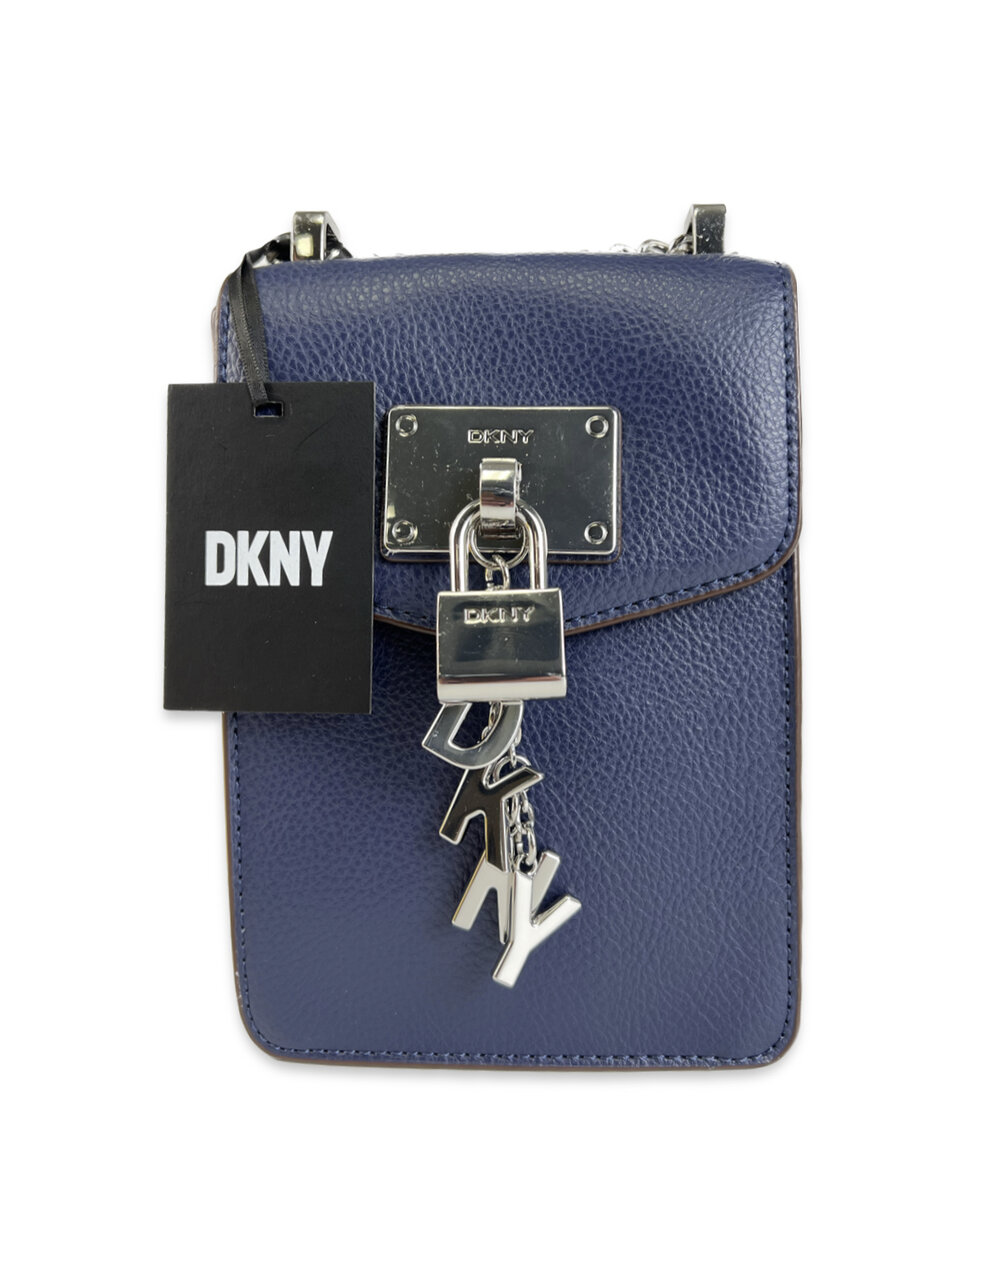 DKNY Handbags, Cross Body Bags